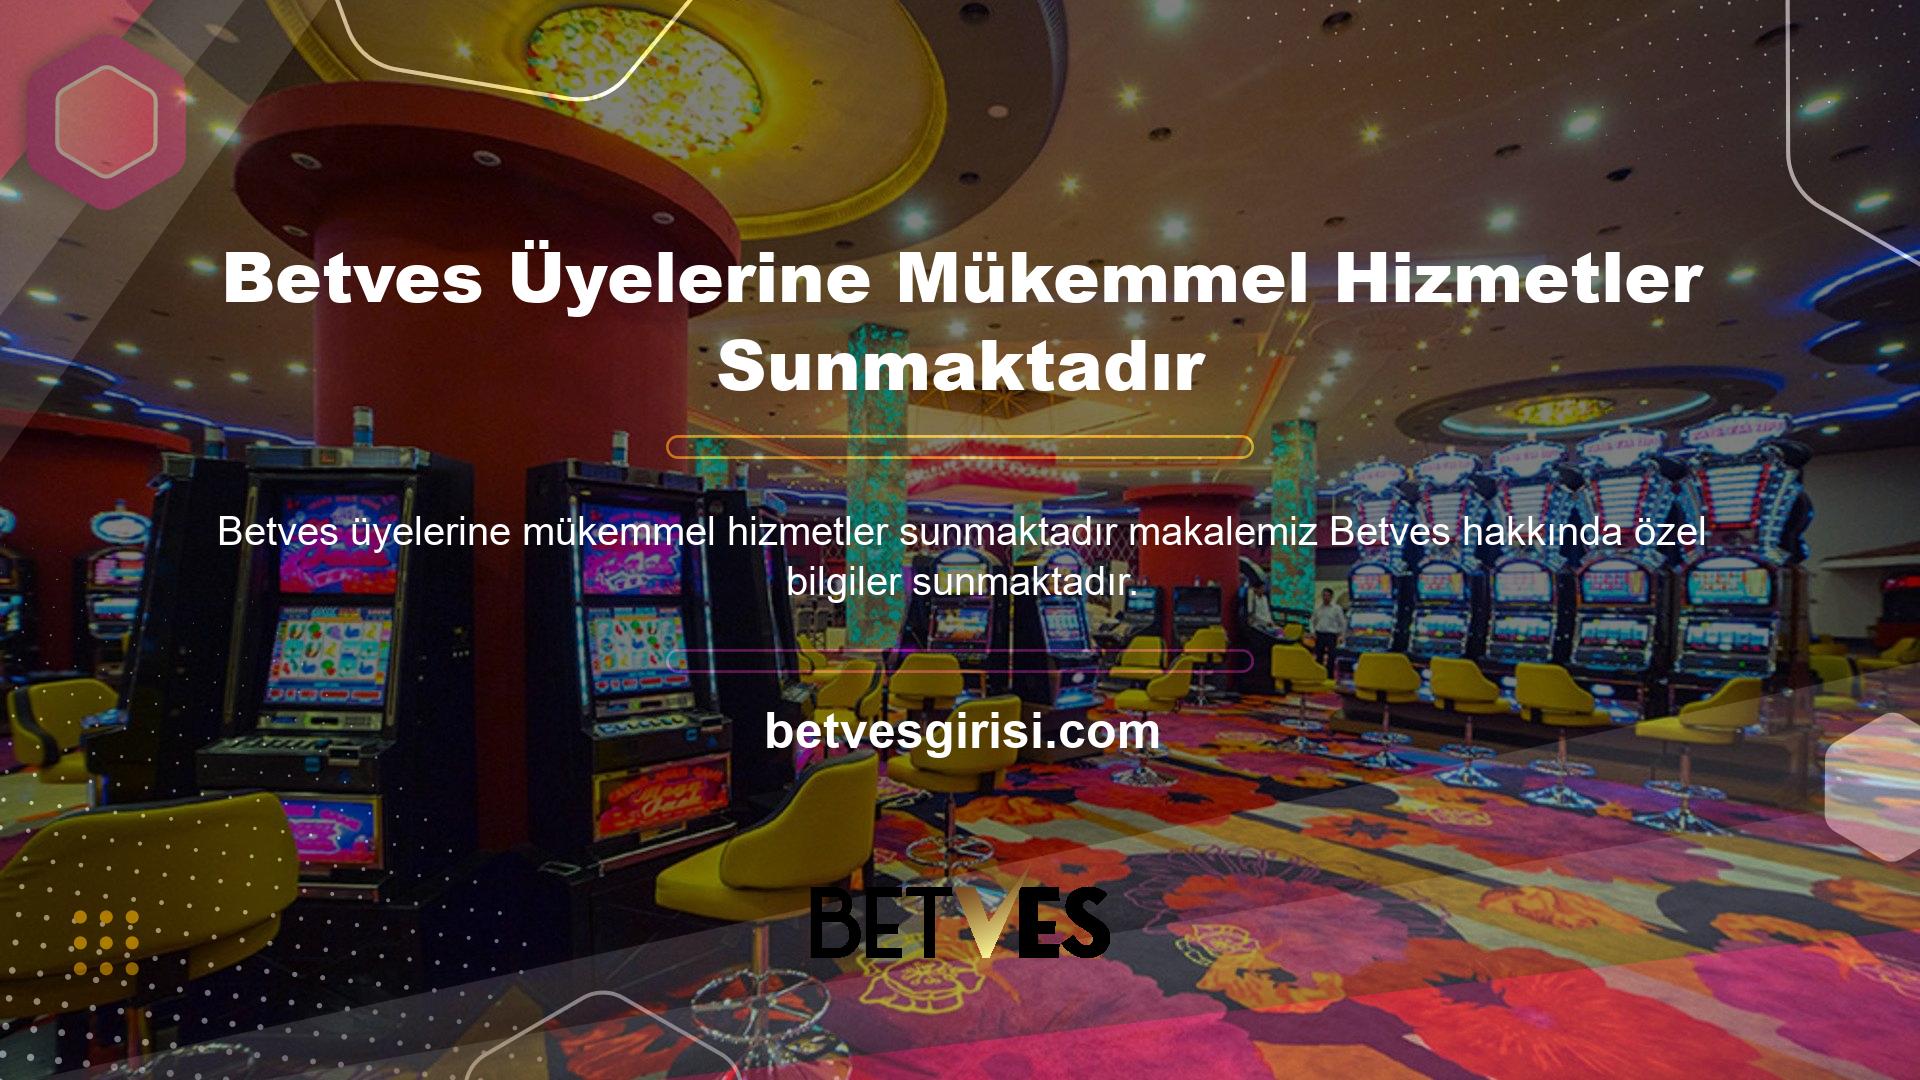 Betves aracılığıyla çevrimiçi casino